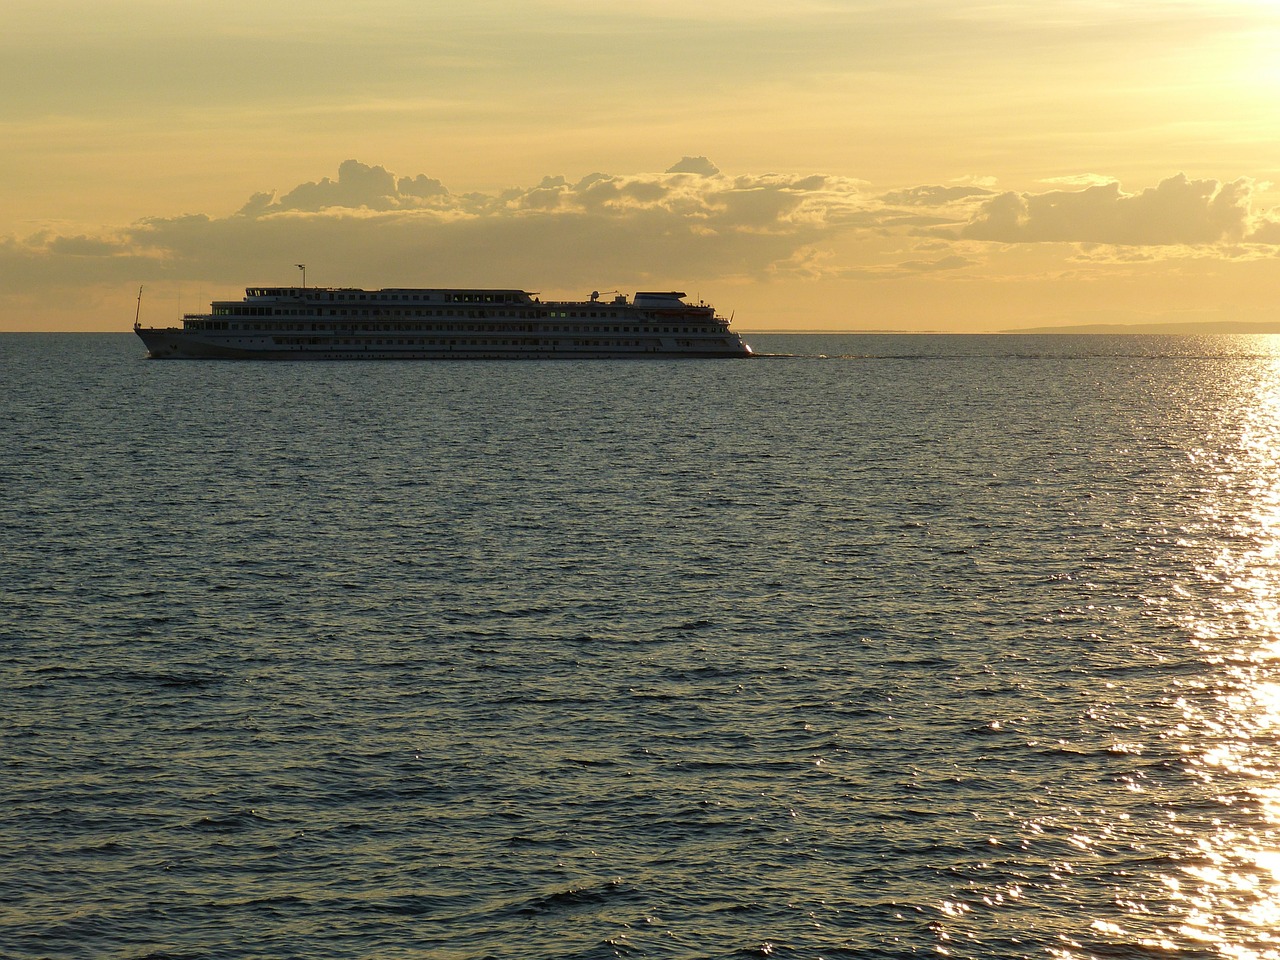 lake ladoga cruise ship russia free photo